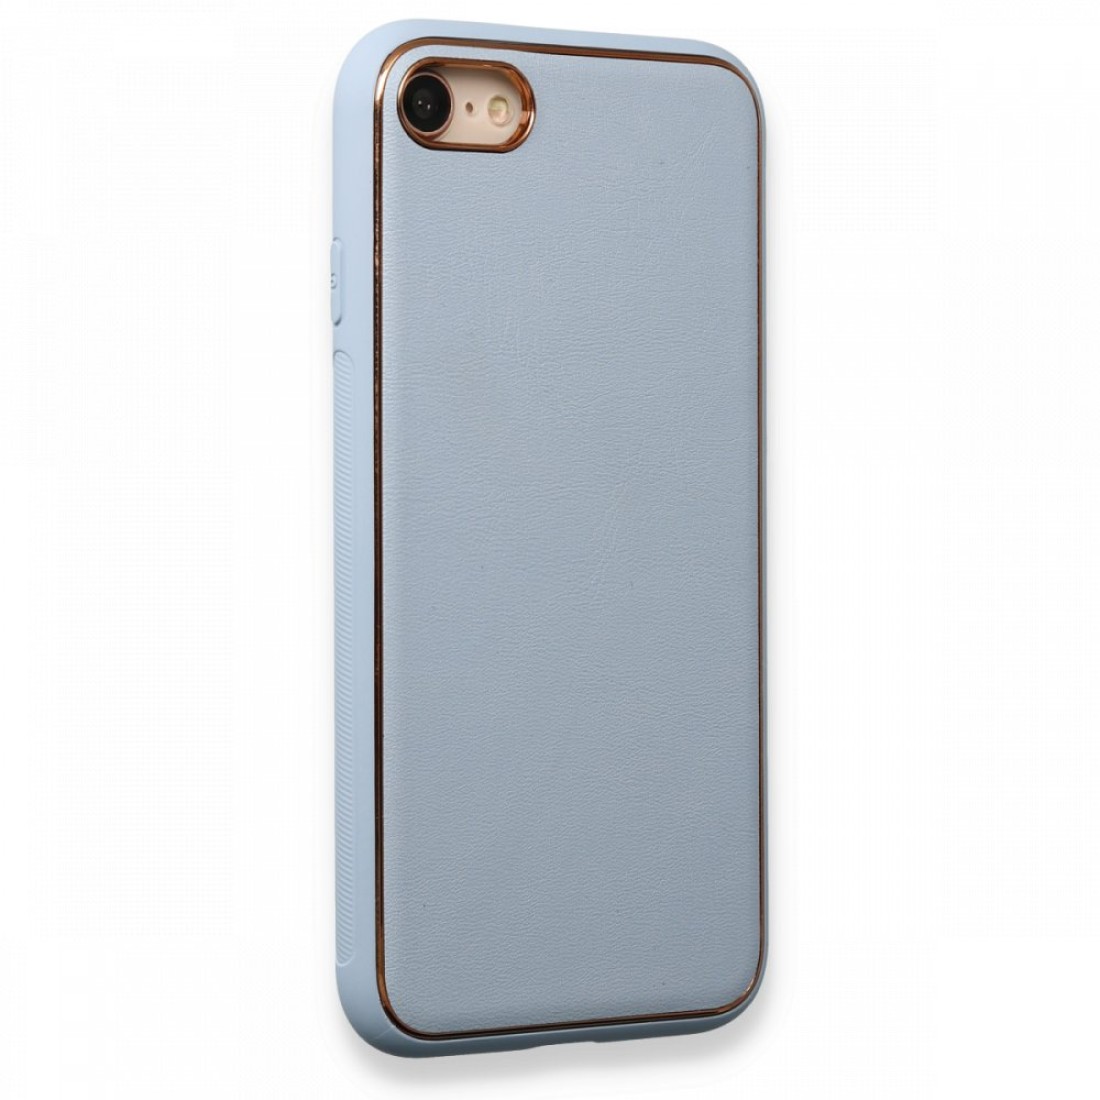 Apple iPhone SE 2020 Kılıf Coco Deri Silikon Kapak - Açık Mavi